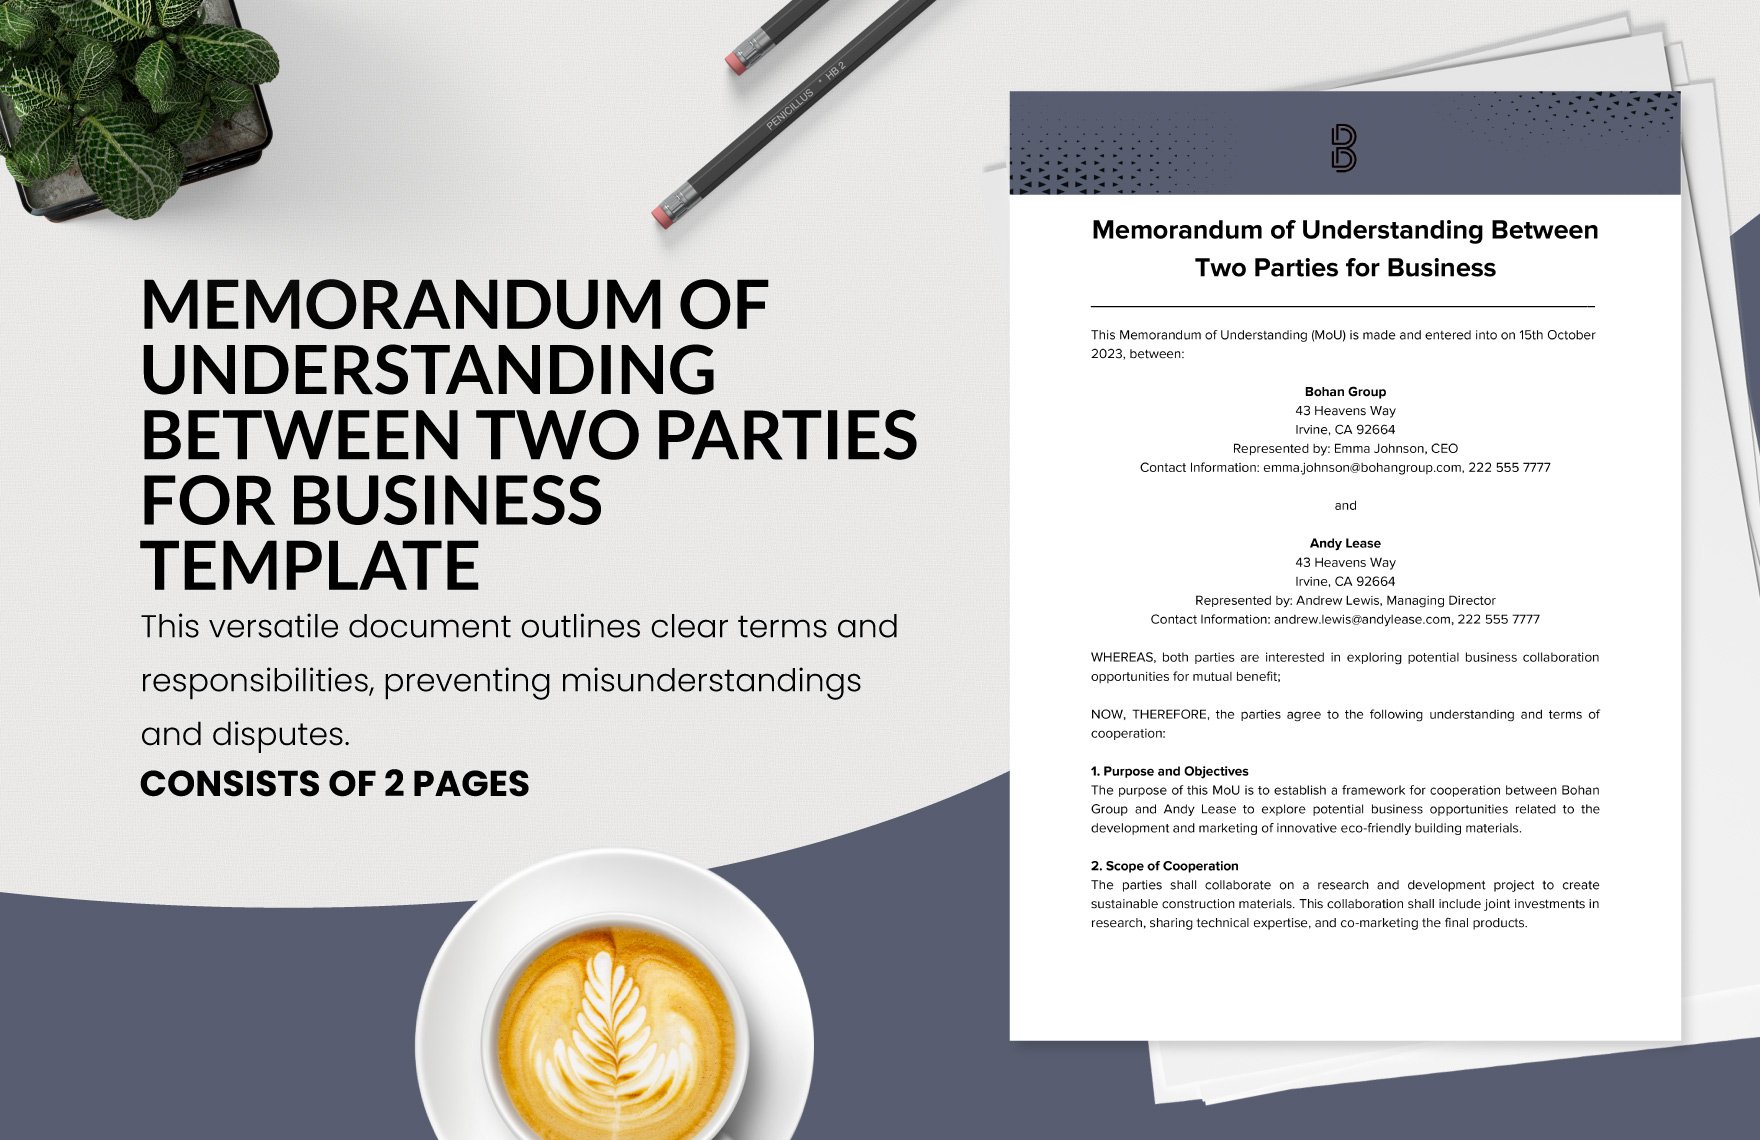 Memorandum of Understanding Between Two Parties for Business Template